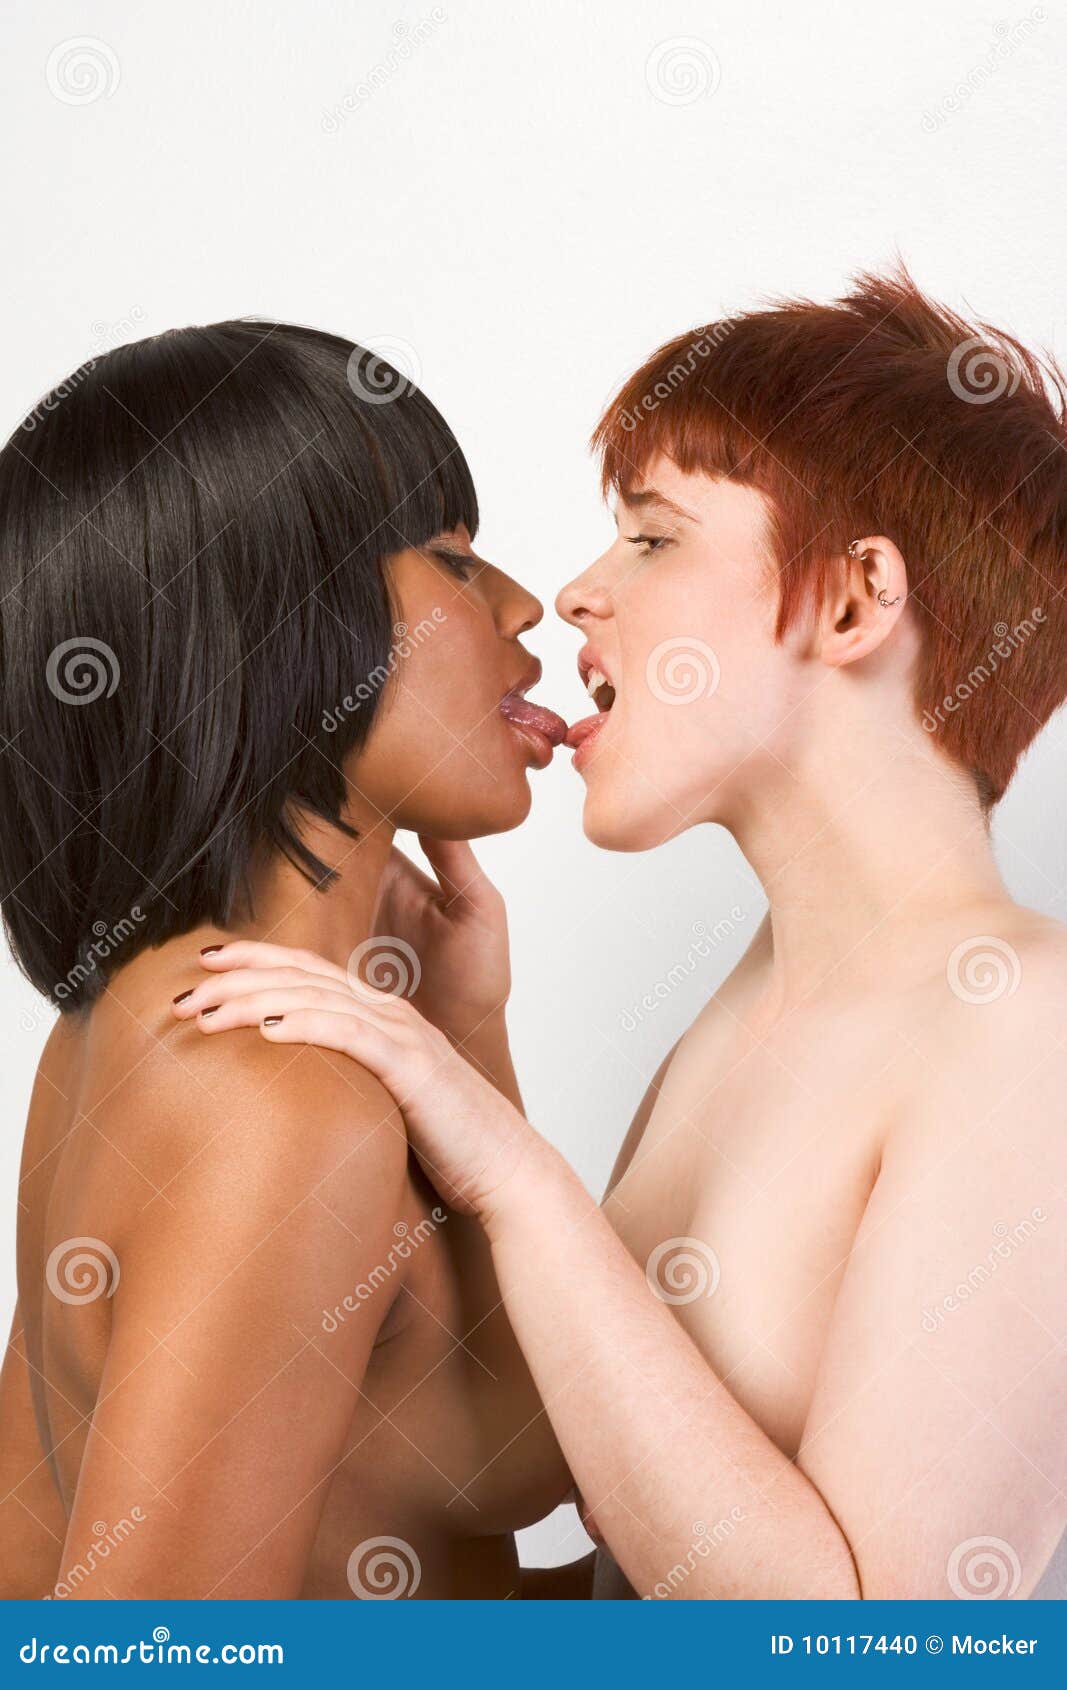 interracial lesbian pic stříkat lesbičky